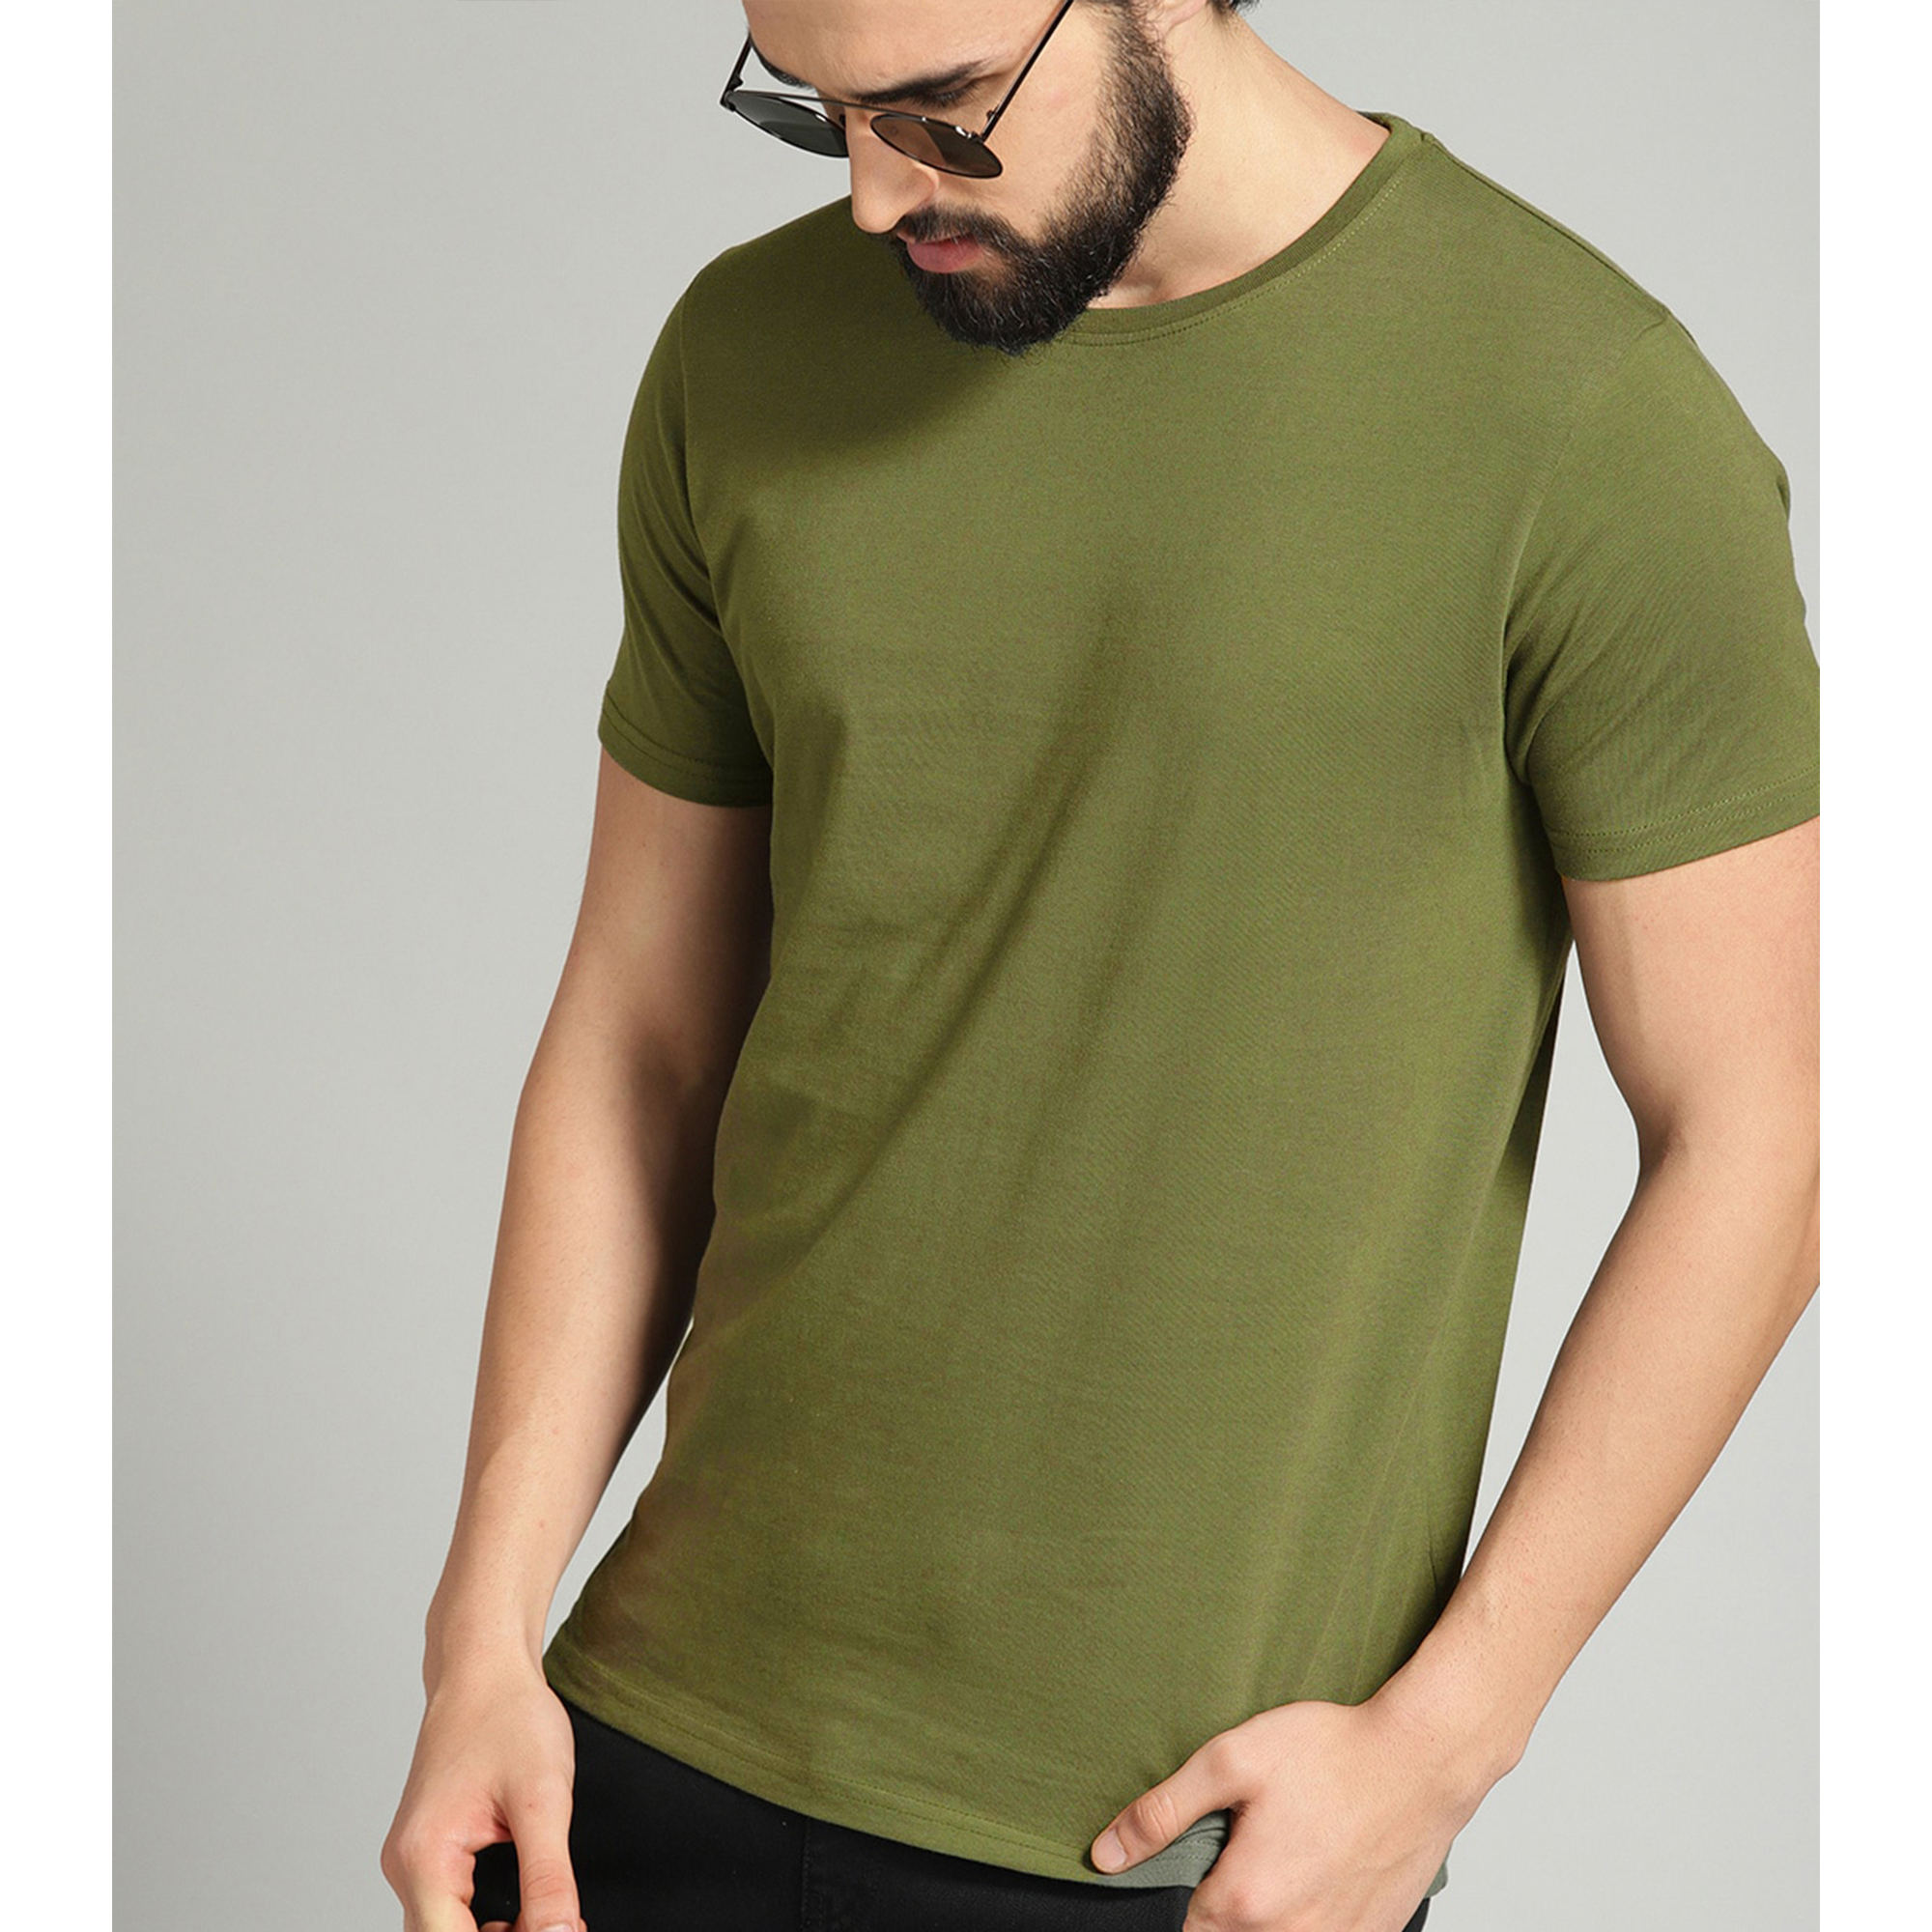 Men's Cotton Minimalist T-shirts (Pack of 4) - Adorable Me